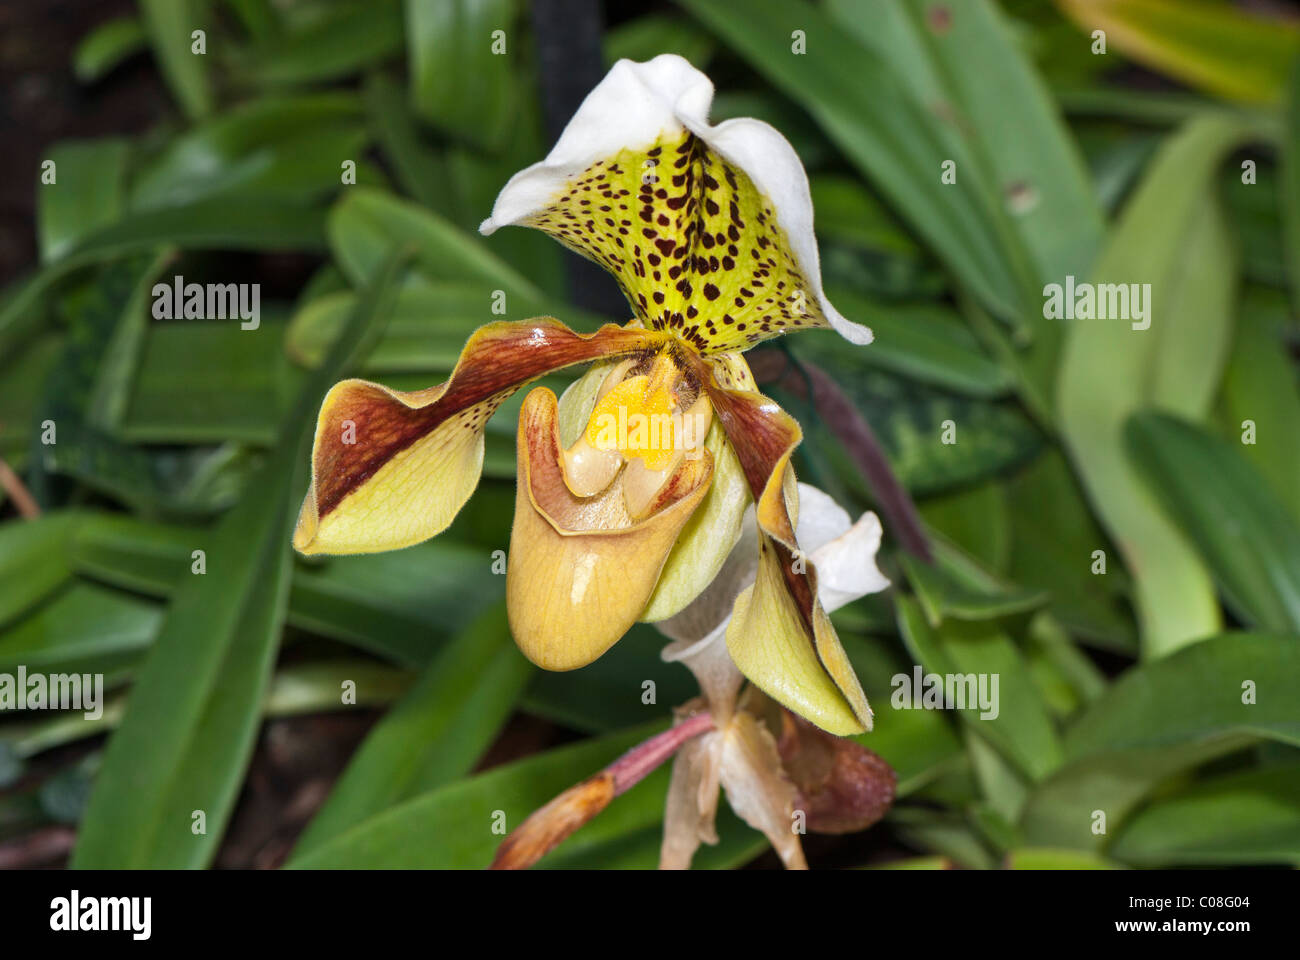 Paphiopedilum orchidaceae Stock Photo